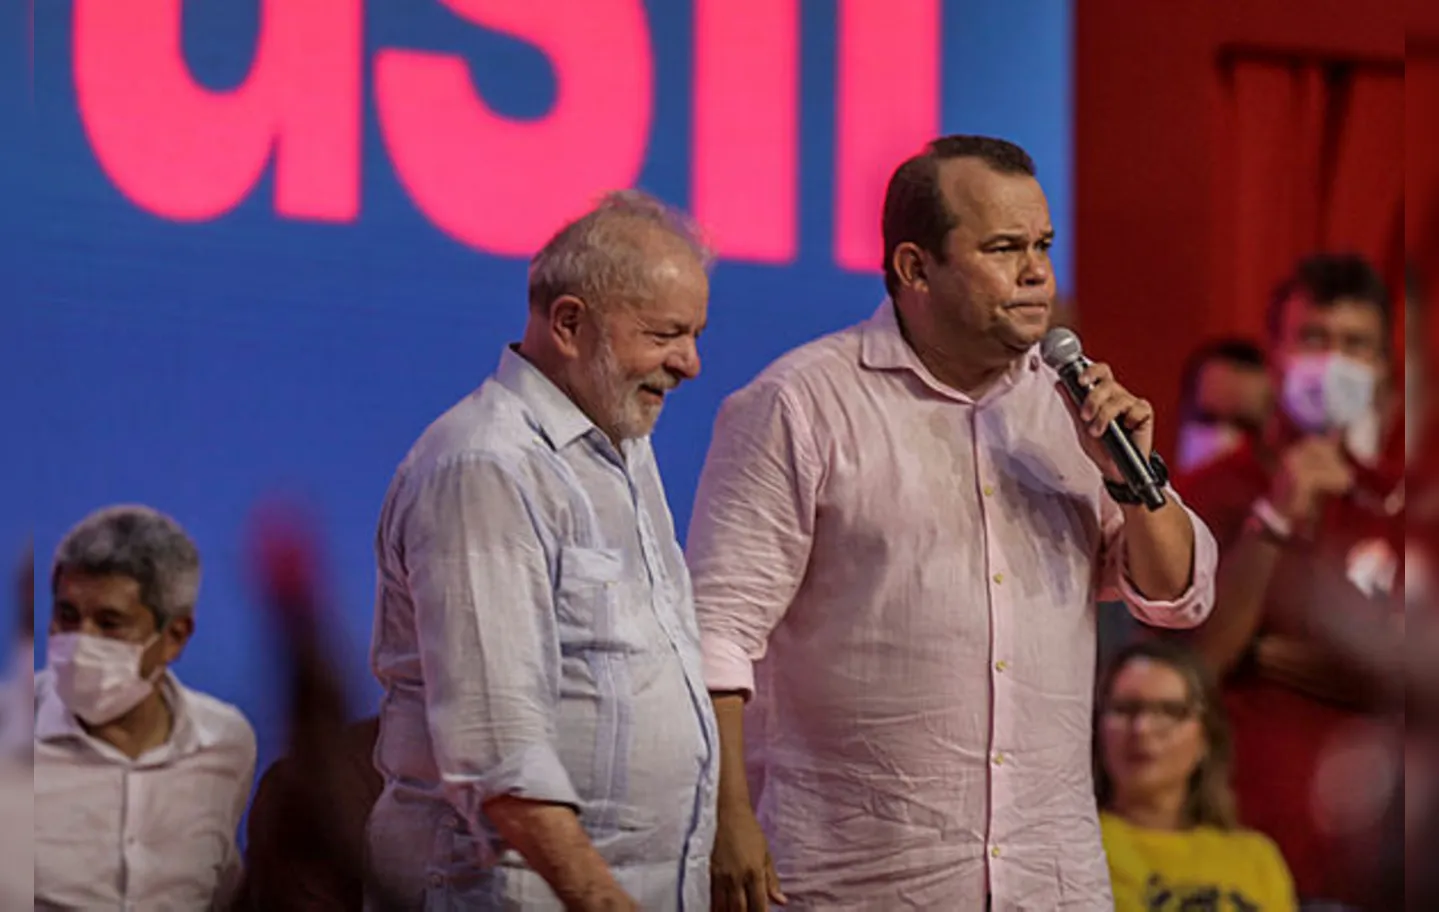 Geraldo Júnior e Lula durante campanha eleitoral em 2022